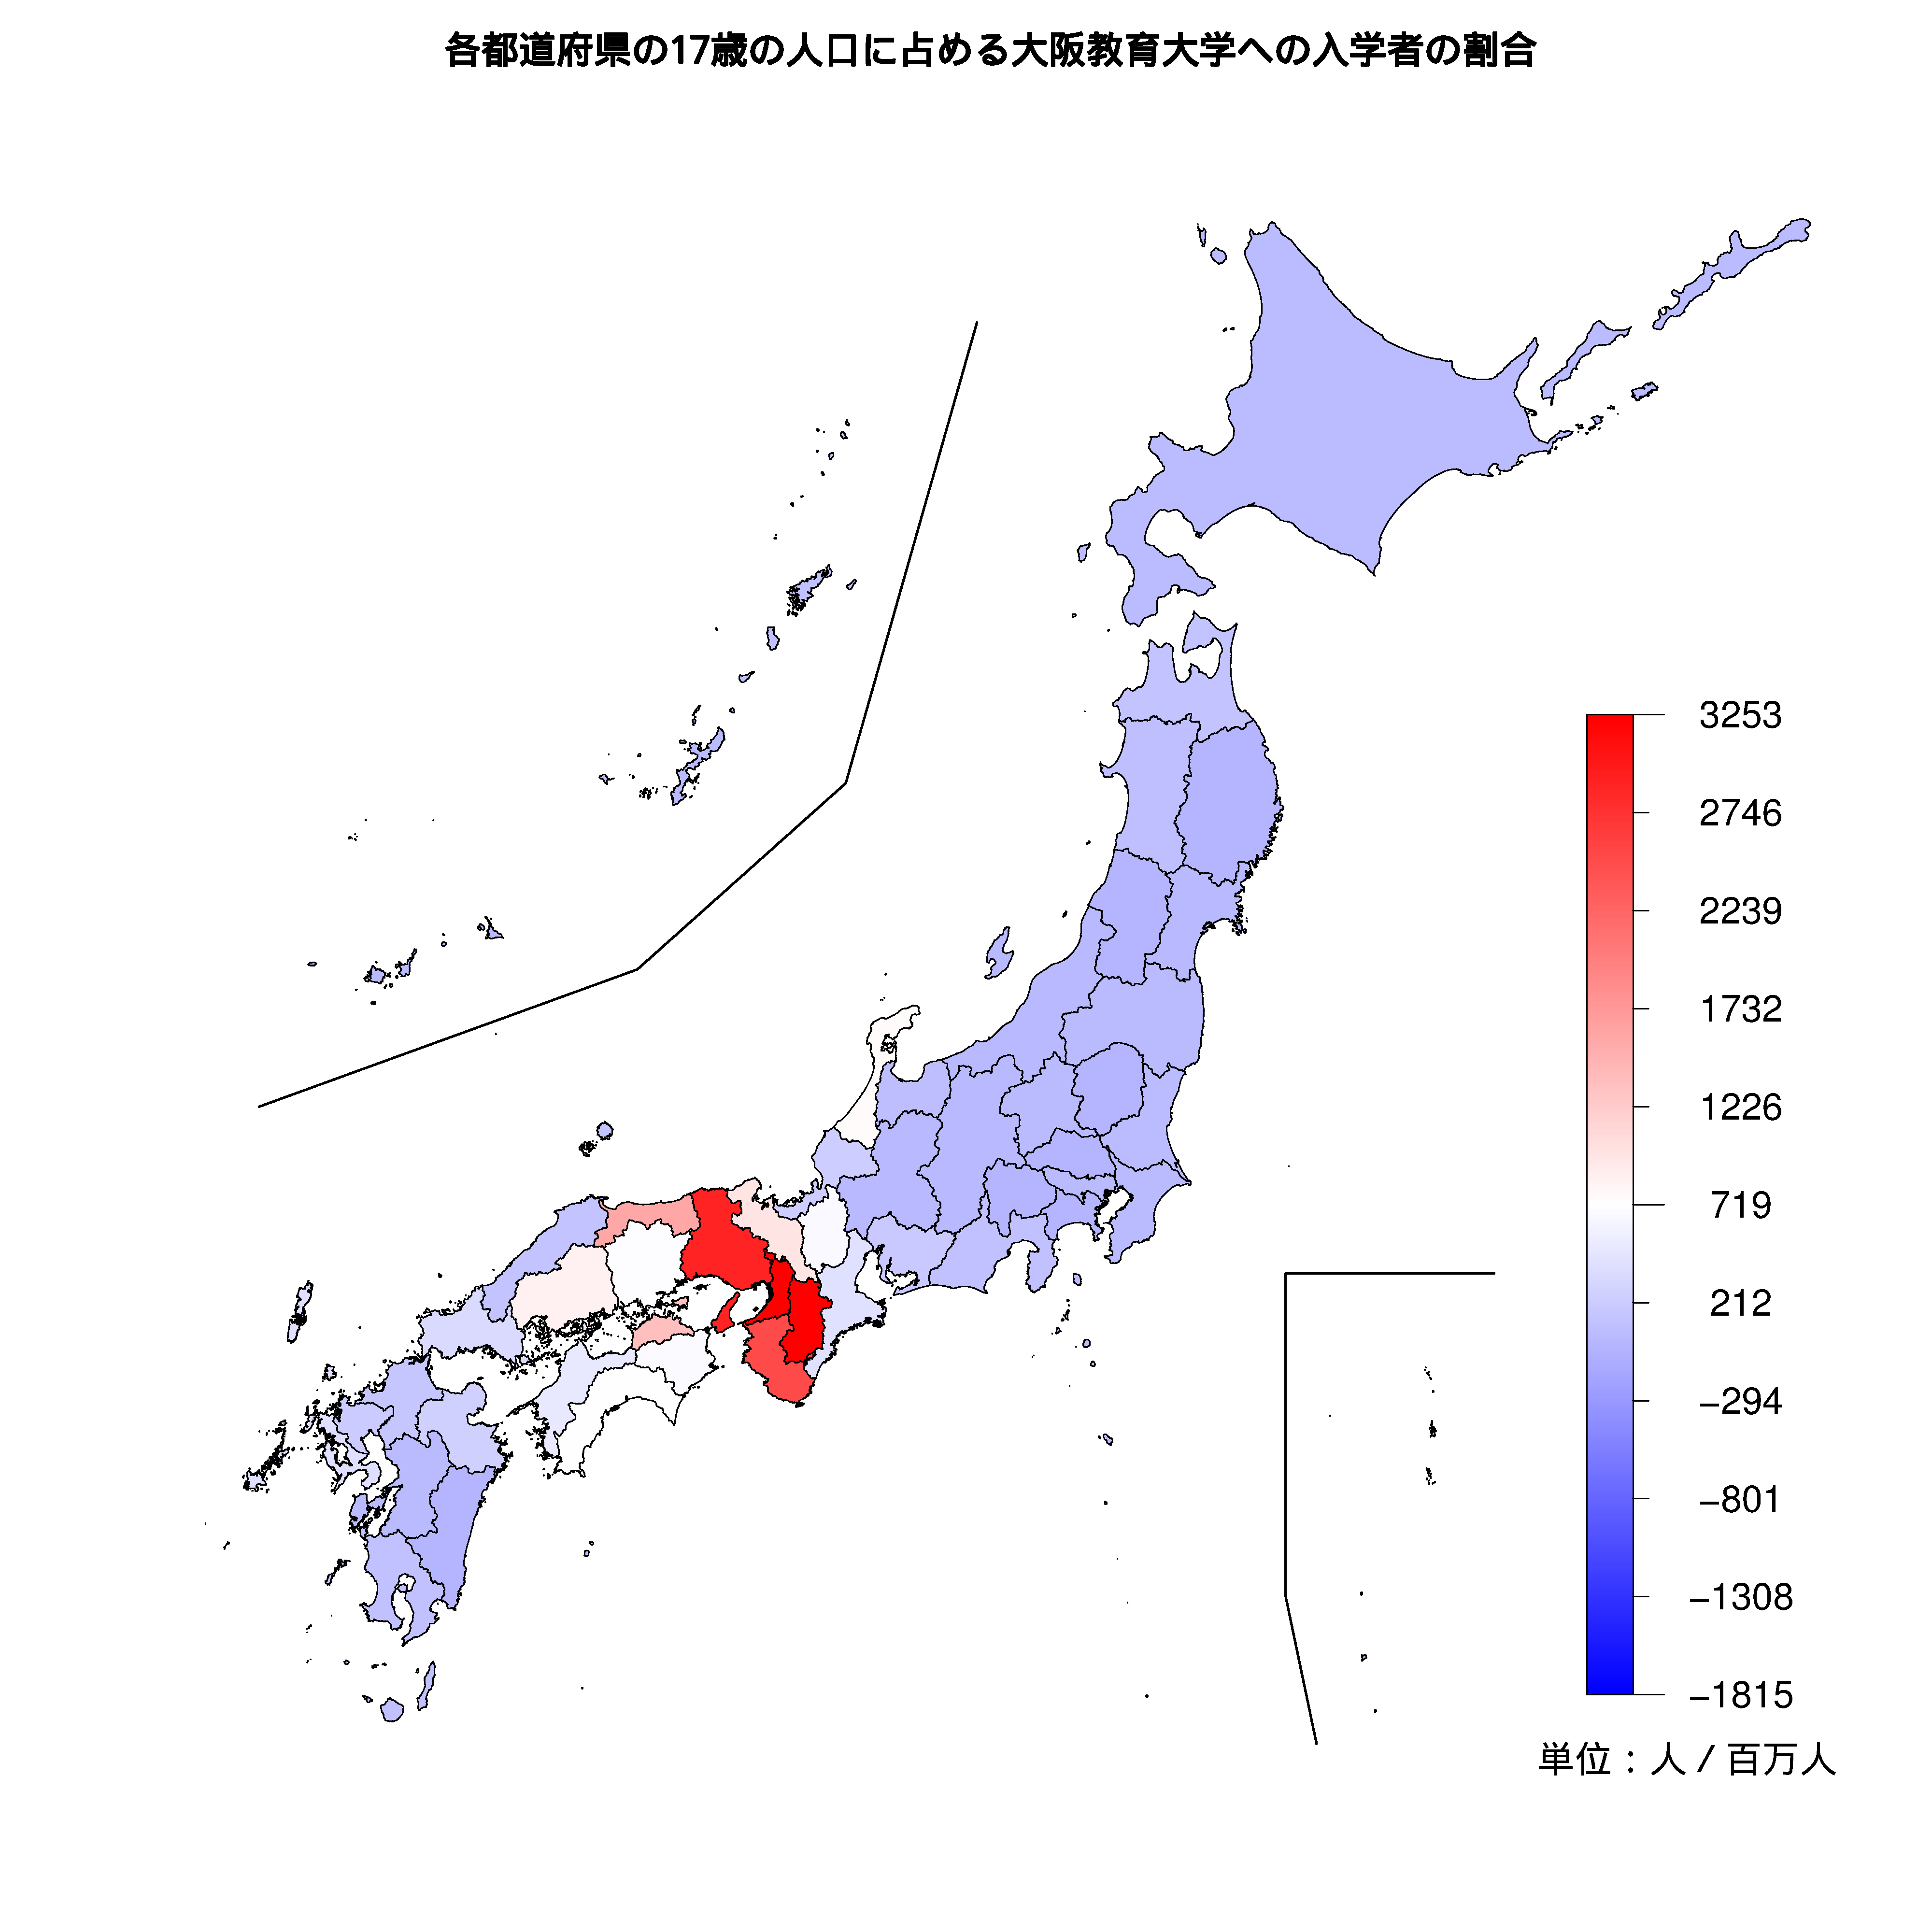 大阪教育大学への入学者が多い都道府県の色分け地図